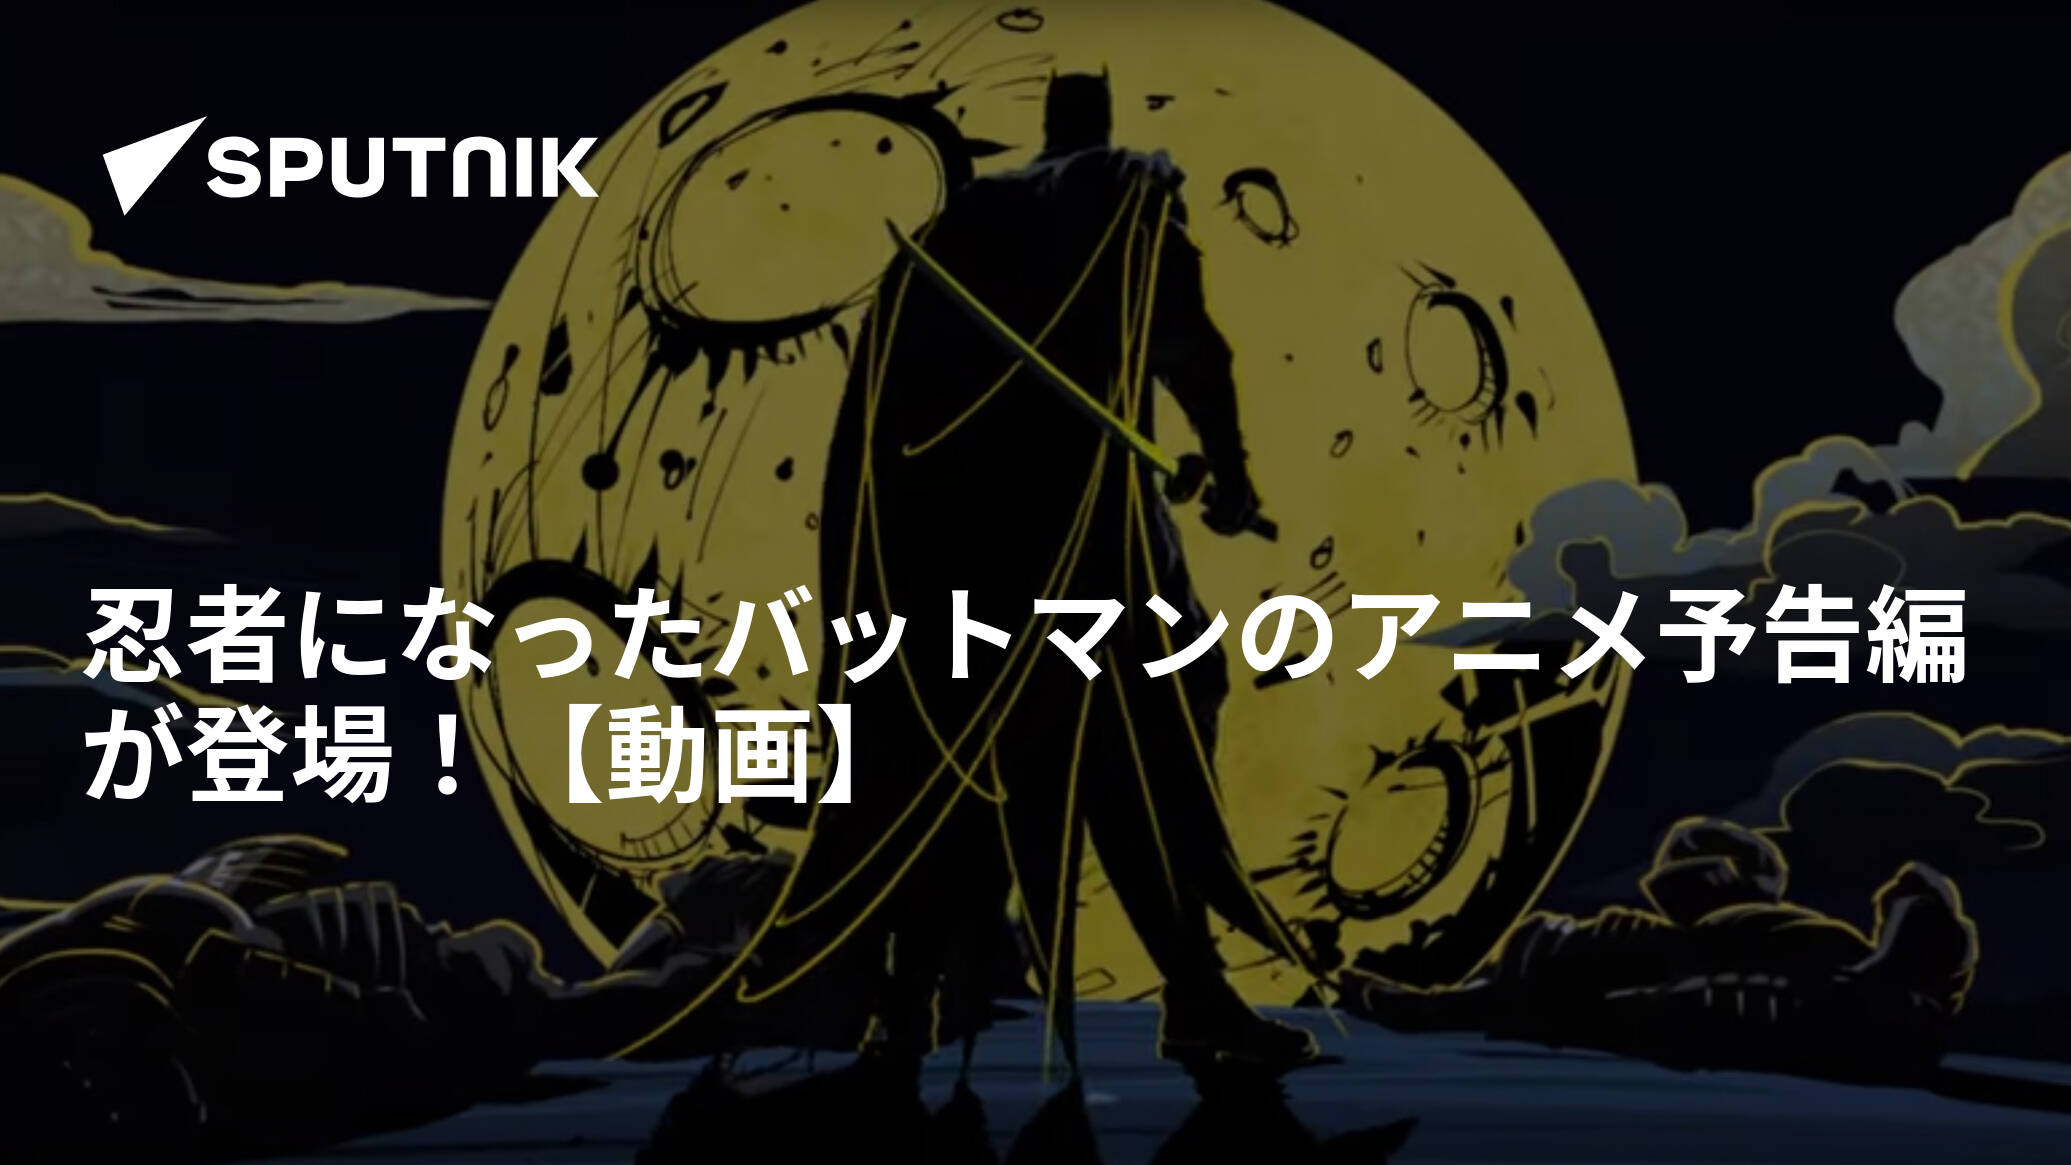 忍者になったバットマンのアニメ予告編が登場 動画 17年12月2日 Sputnik 日本